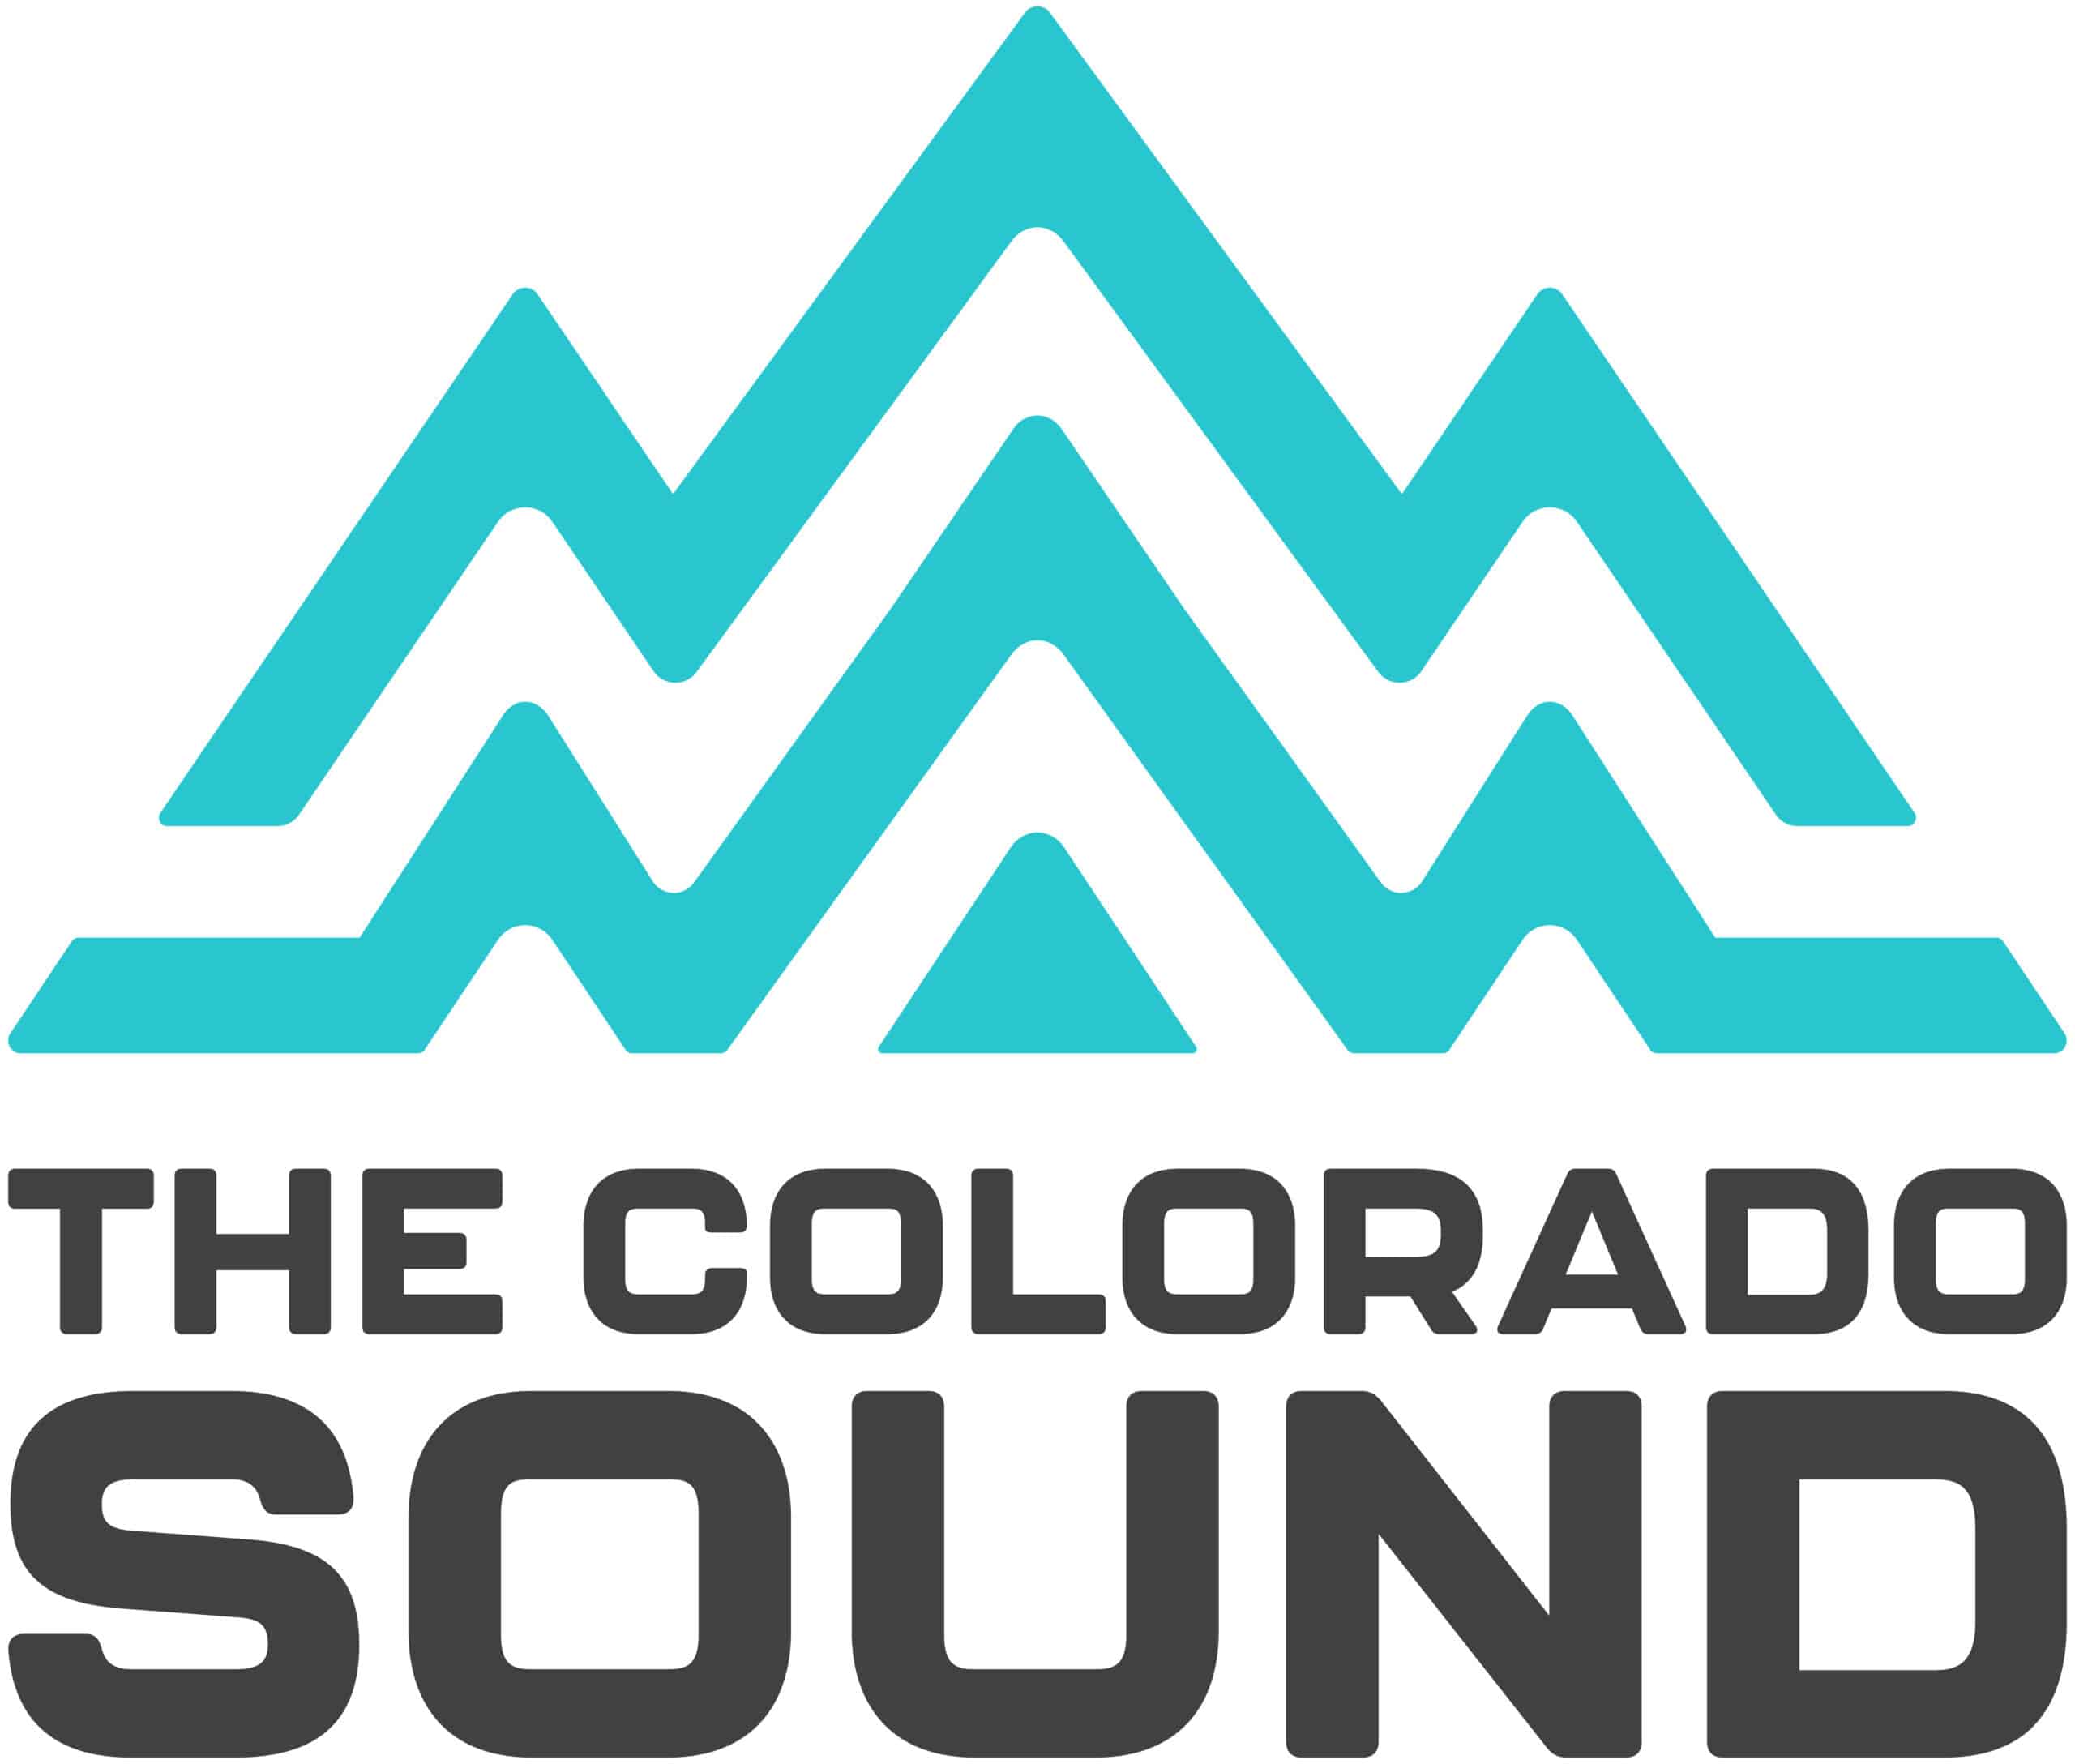 Colorado Sound